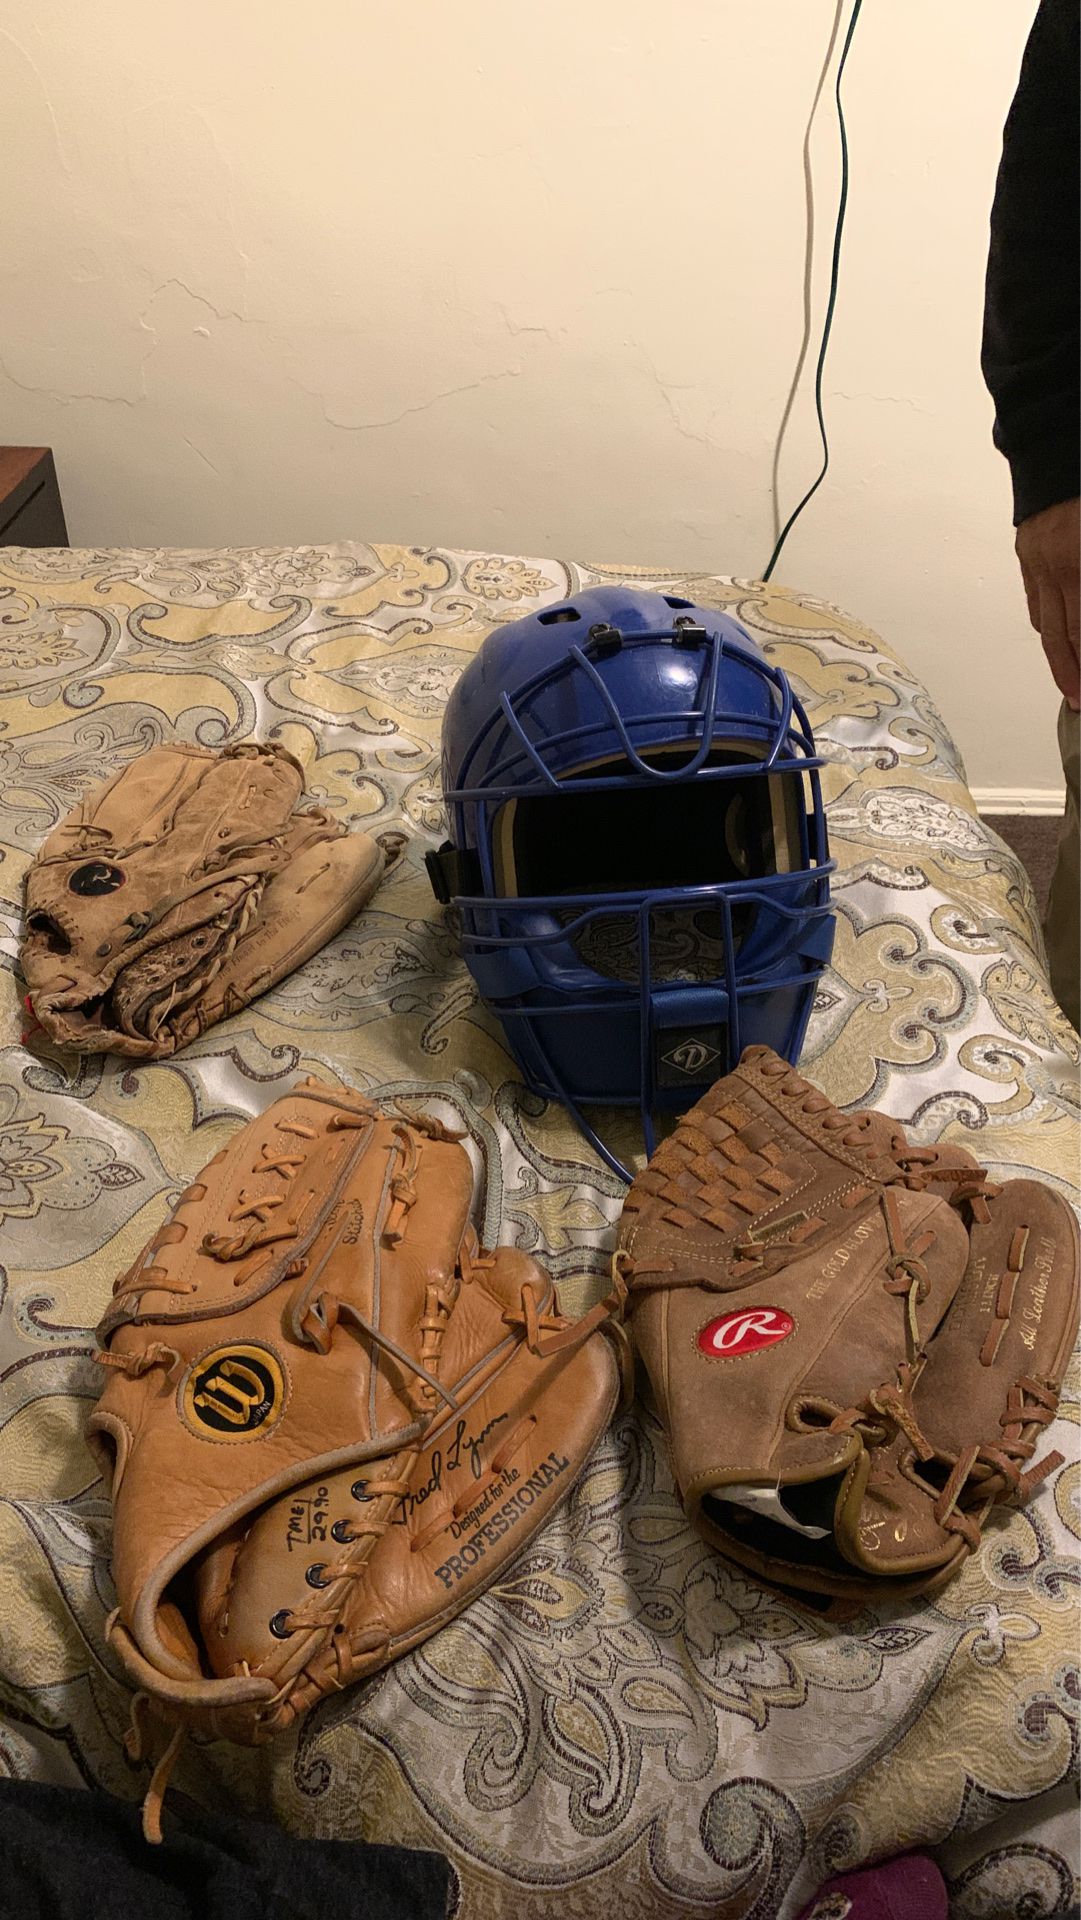 Diamond helmet. 3 baseball gloves